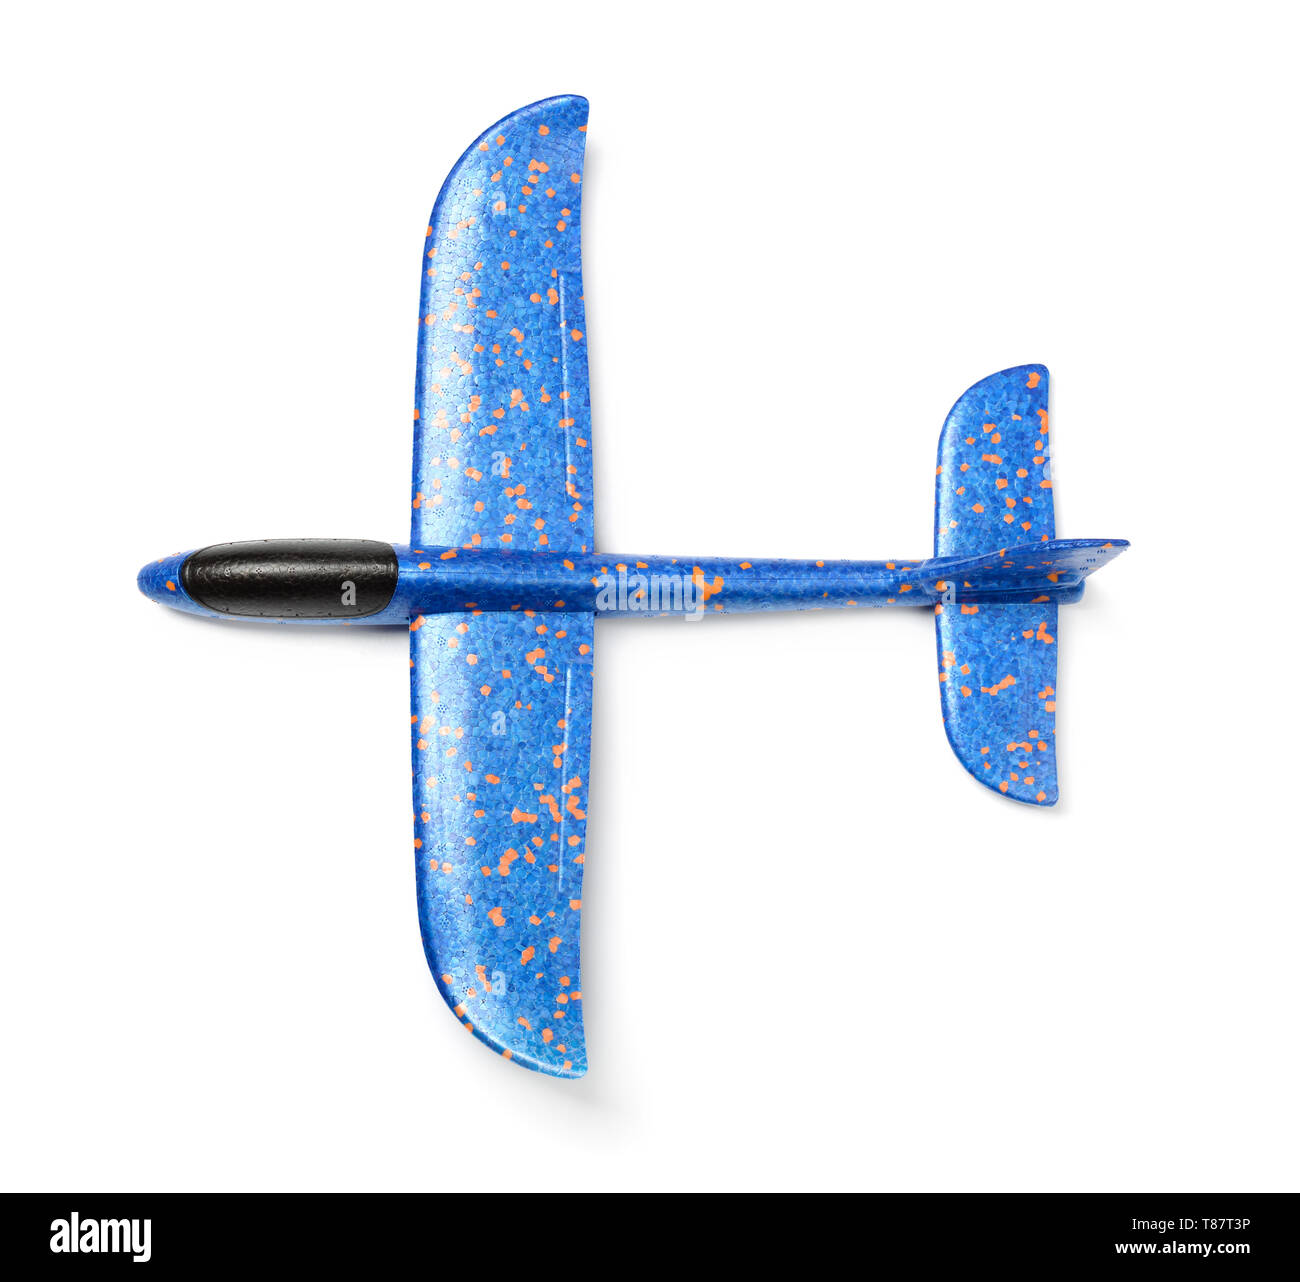 Vue de dessus de la mousse bleu avion planeur isolated on white Banque D'Images